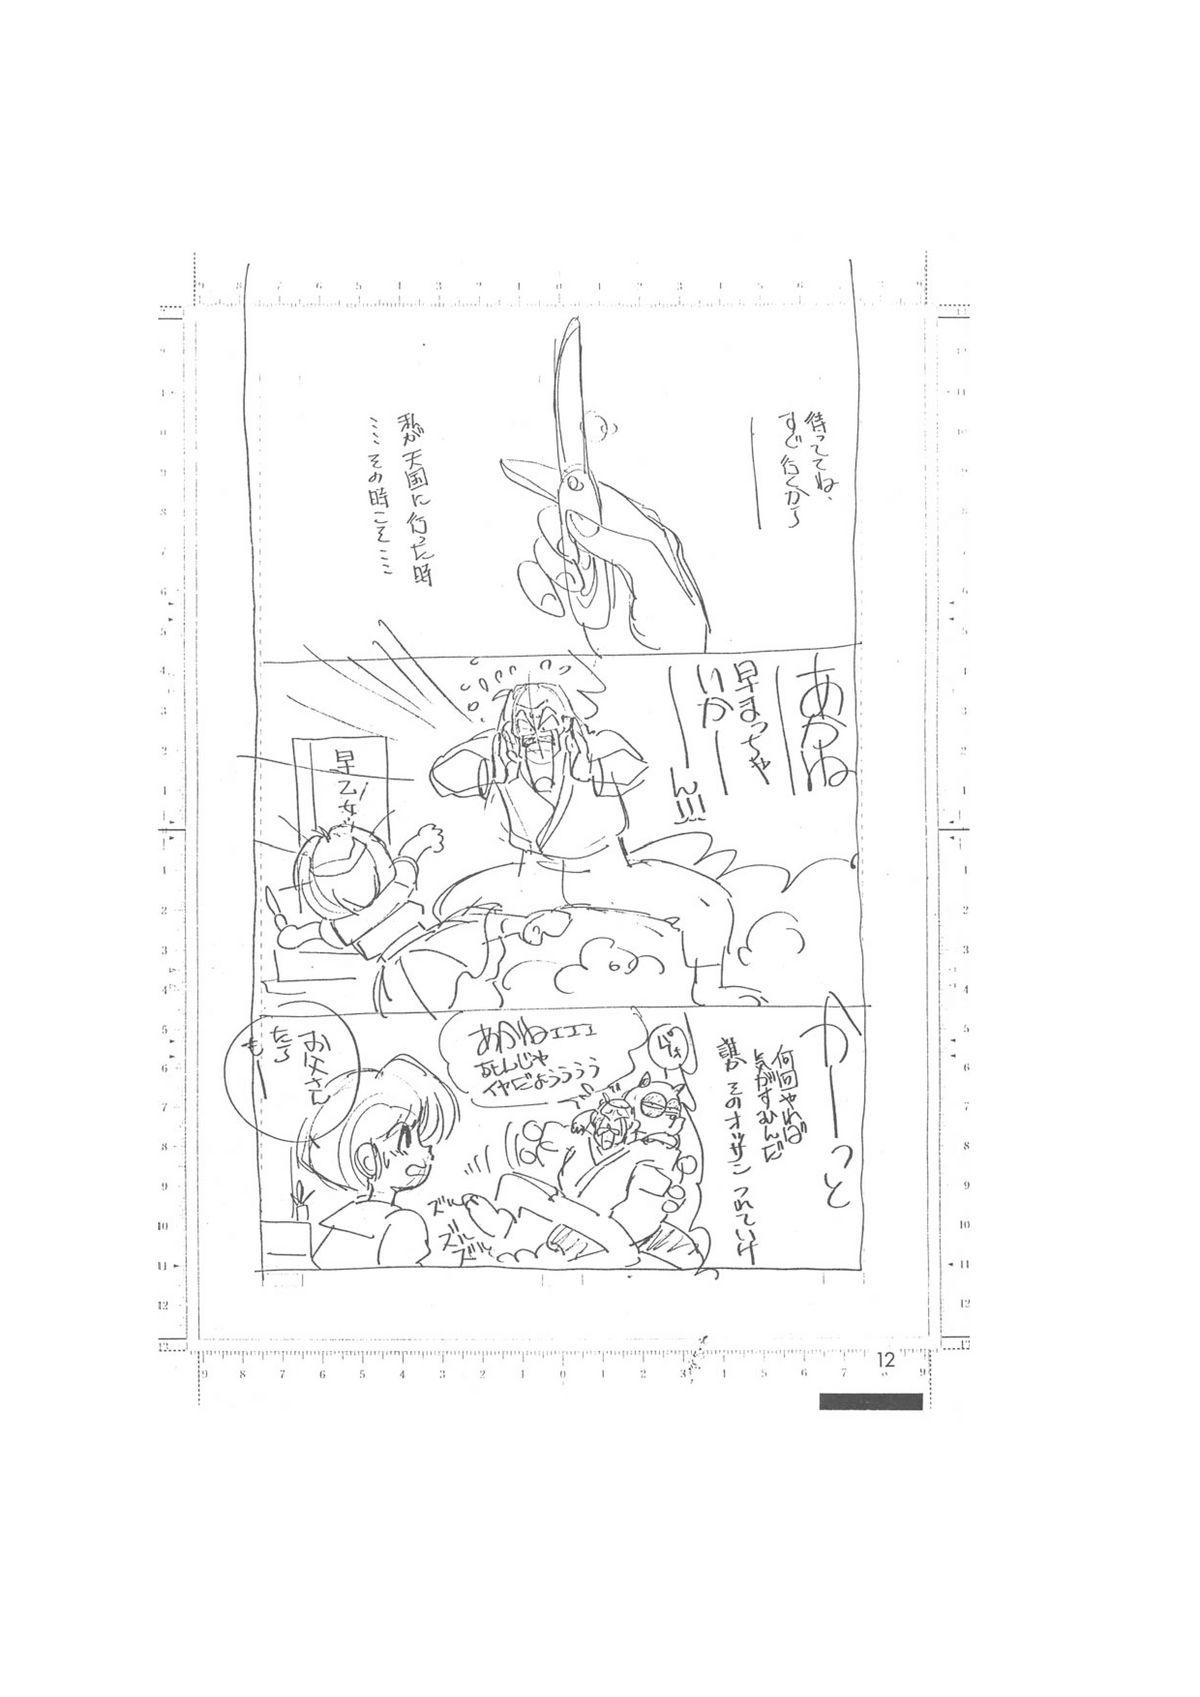 メイキング・オブ・『真・最悪的悲劇』 - A Ranma Doujin Sketch by Dark Zone 11